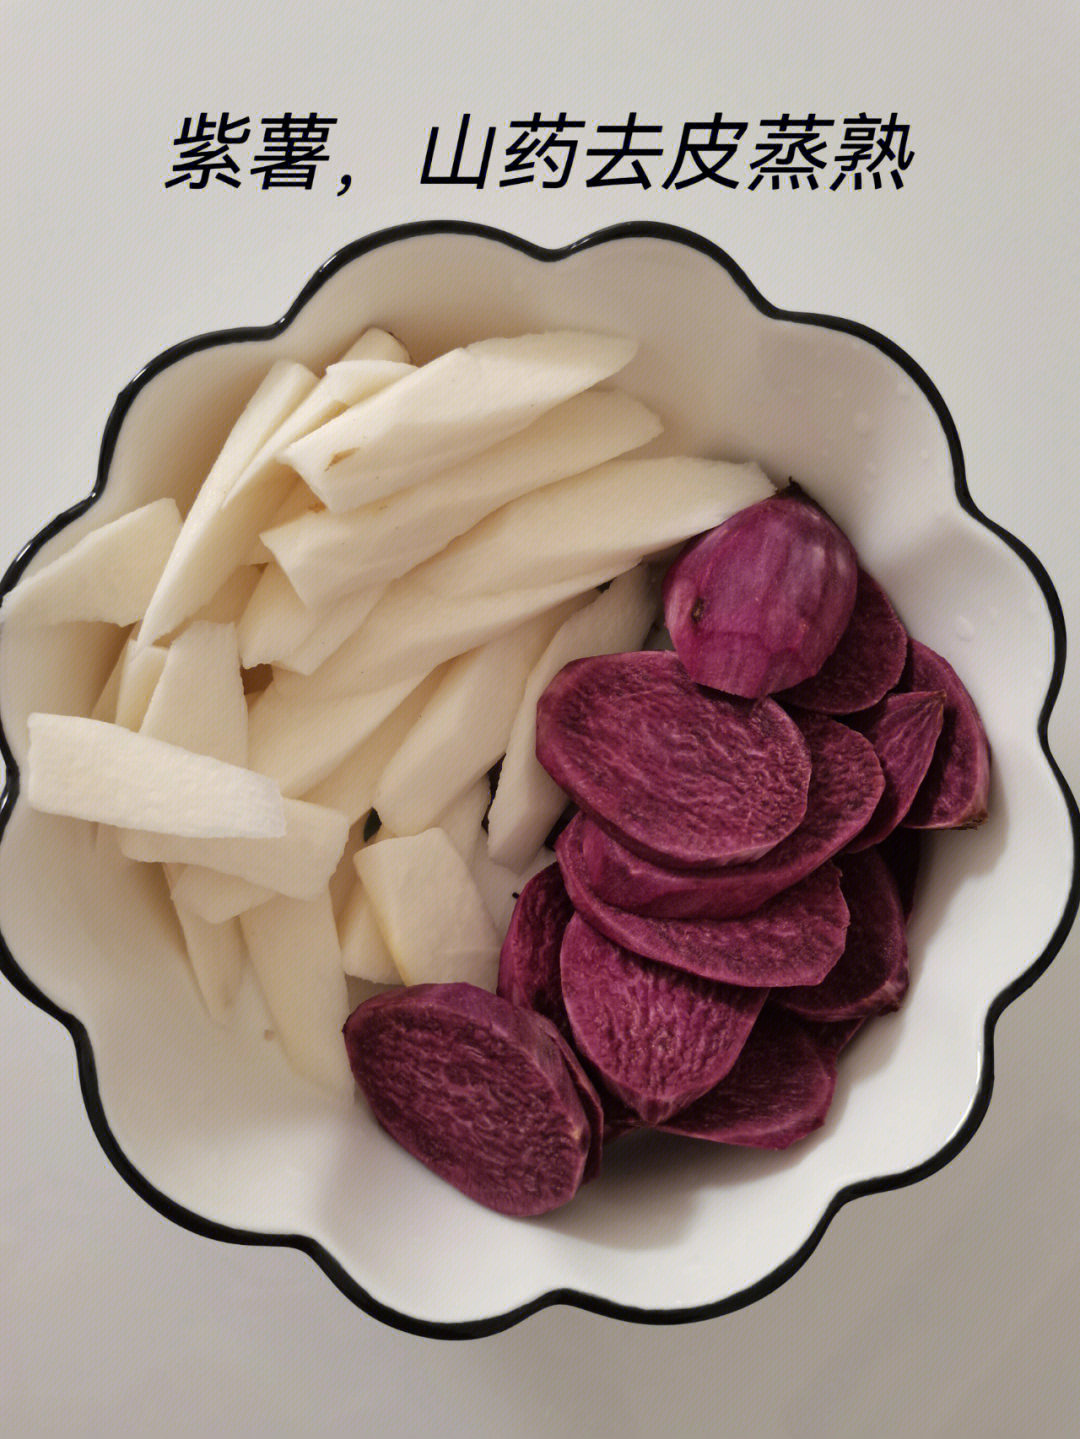 准备食材:紫薯,山药,奶粉,白砂糖做法:166山药,紫薯去皮蒸熟